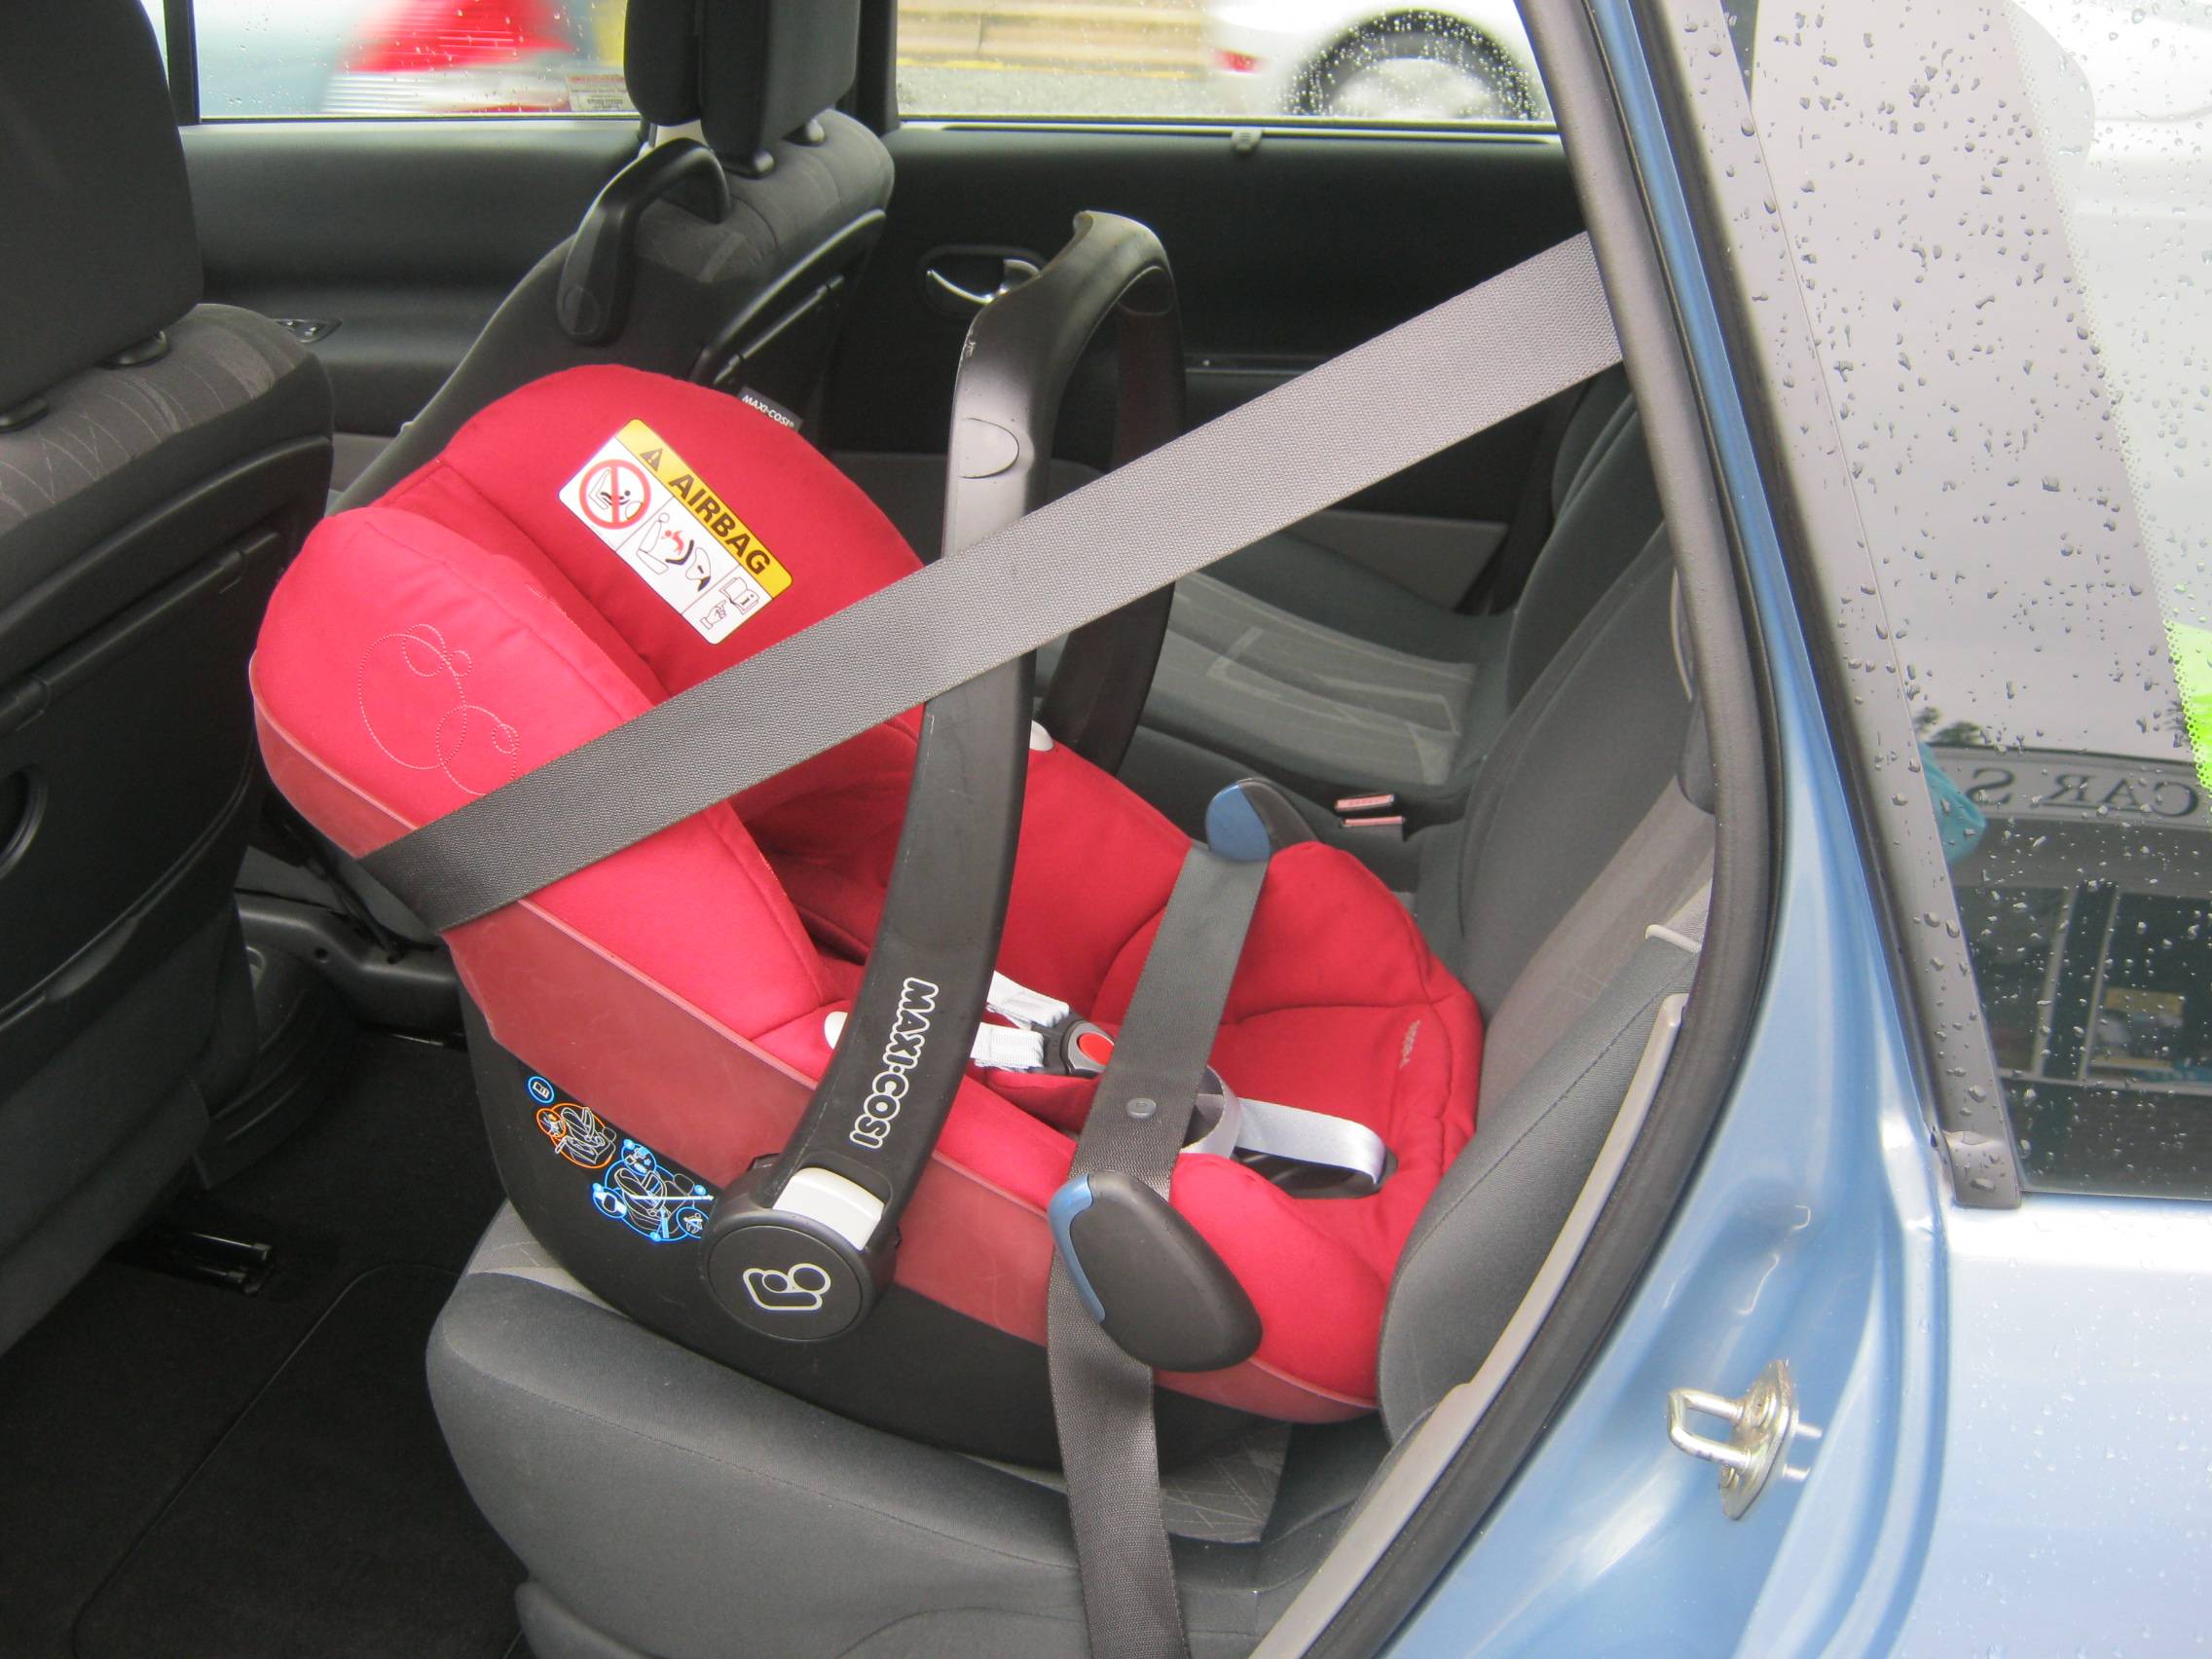 Как крепить автолюльку в машине: правильная установка на заднем сиденье машины, правила безопасности, видеоинструкция